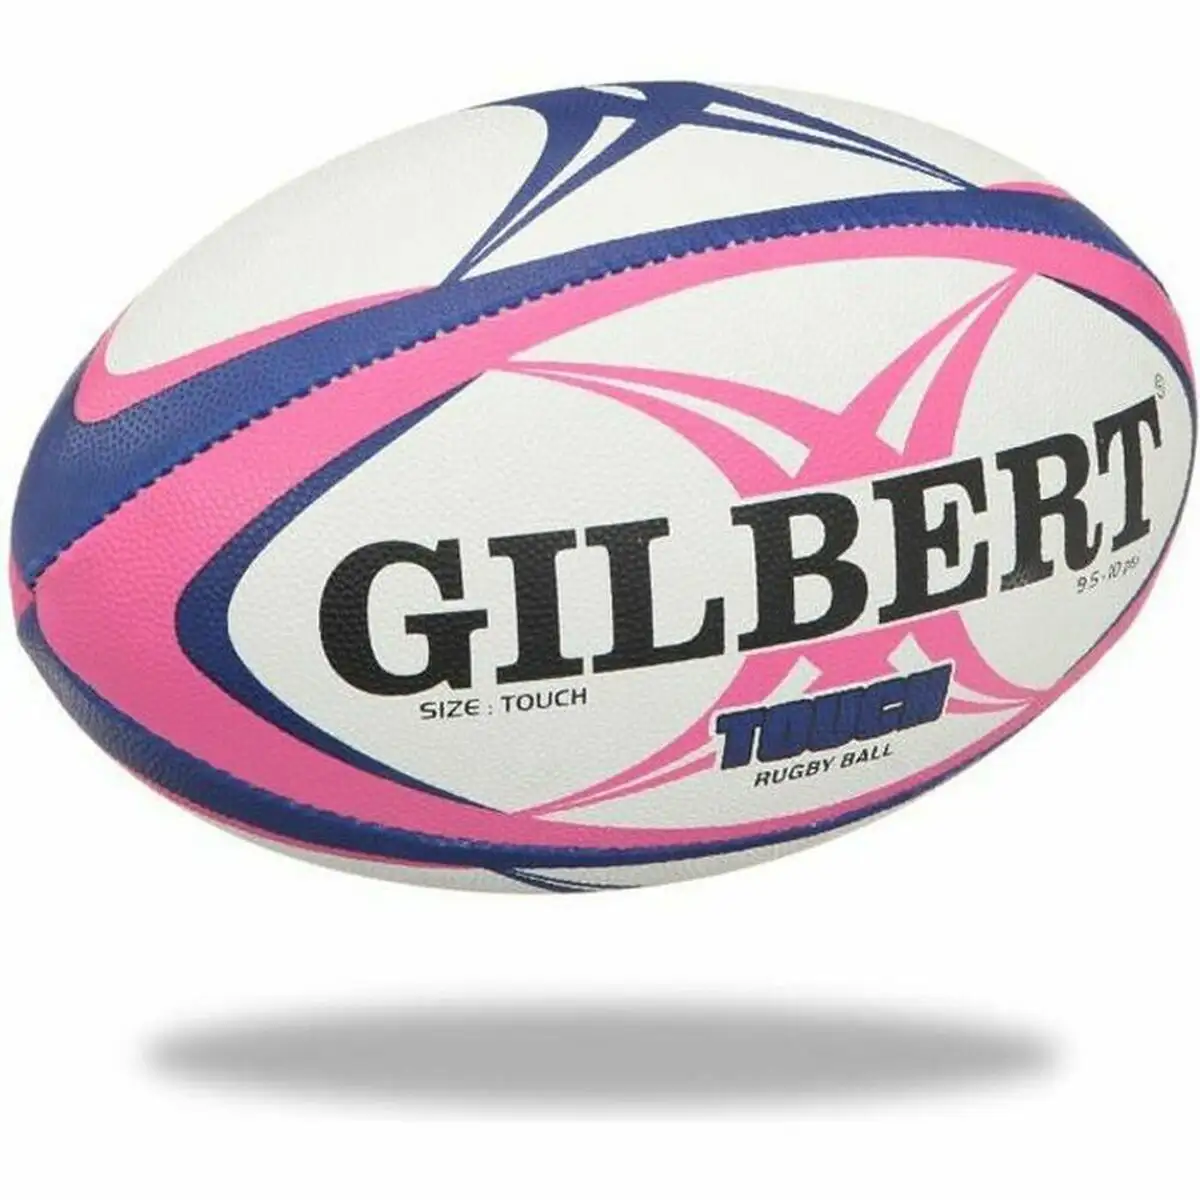 Ballon de rugby gilbert touch multicouleur_7141. Découvrez DIAYTAR SENEGAL - Votre Source de Produits Variés et un Service Exceptionnel. Parcourez nos catégories et bénéficiez d'un service client dévoué, prêt à vous guider à chaque étape.